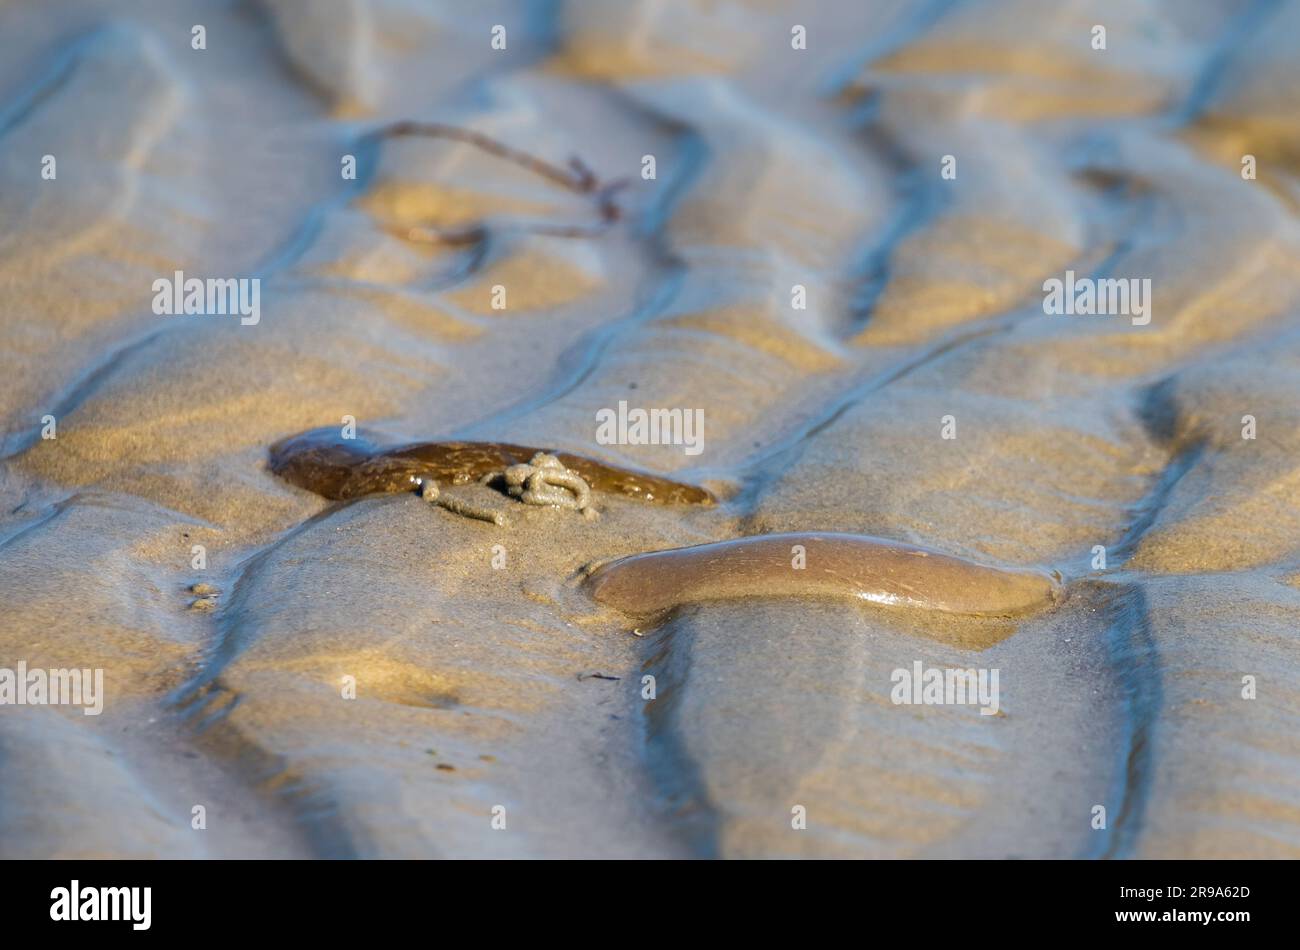 Raro avvistamento di un Lugworm o Sandworm (Arenicola marina) in superficie sulla sabbia di una spiaggia nel Regno Unito. Foto Stock